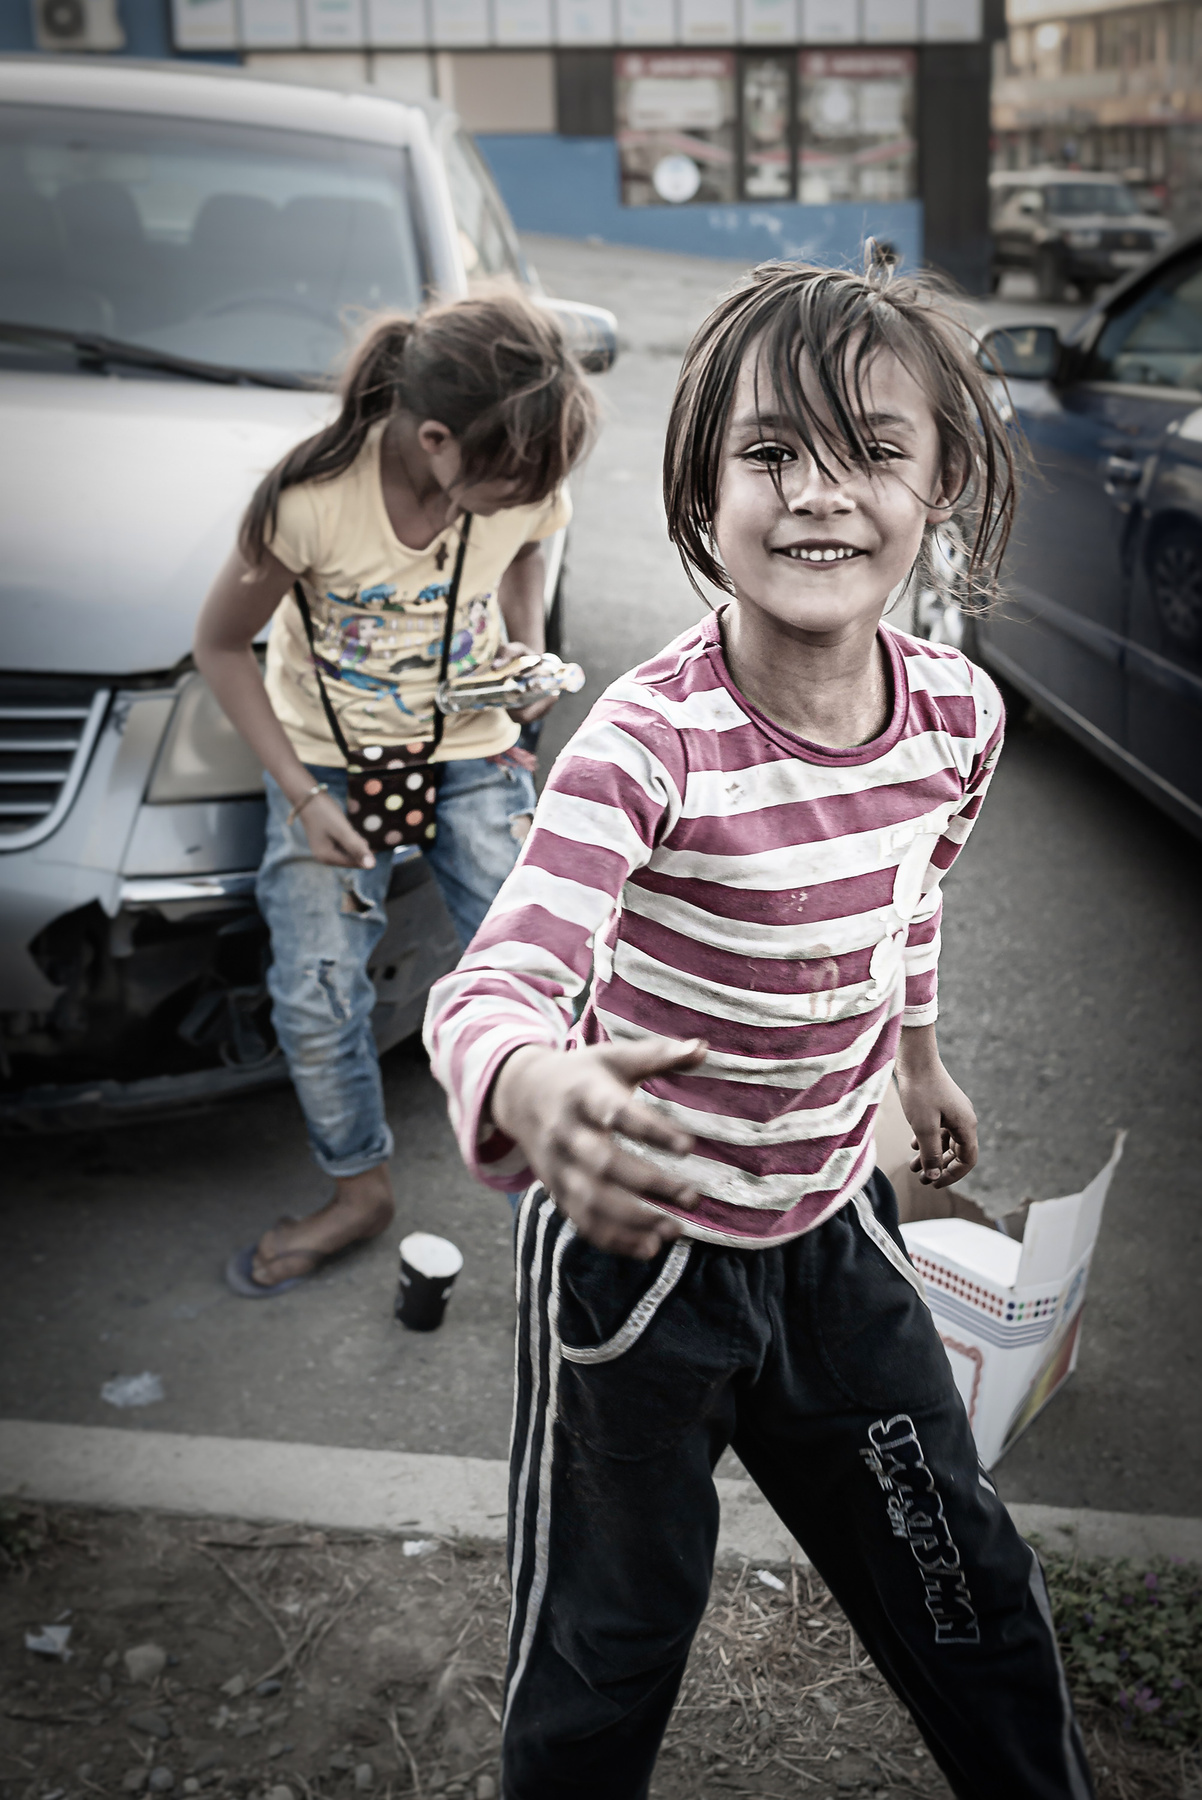 Цыганочка. Стрит-фото город улица дети